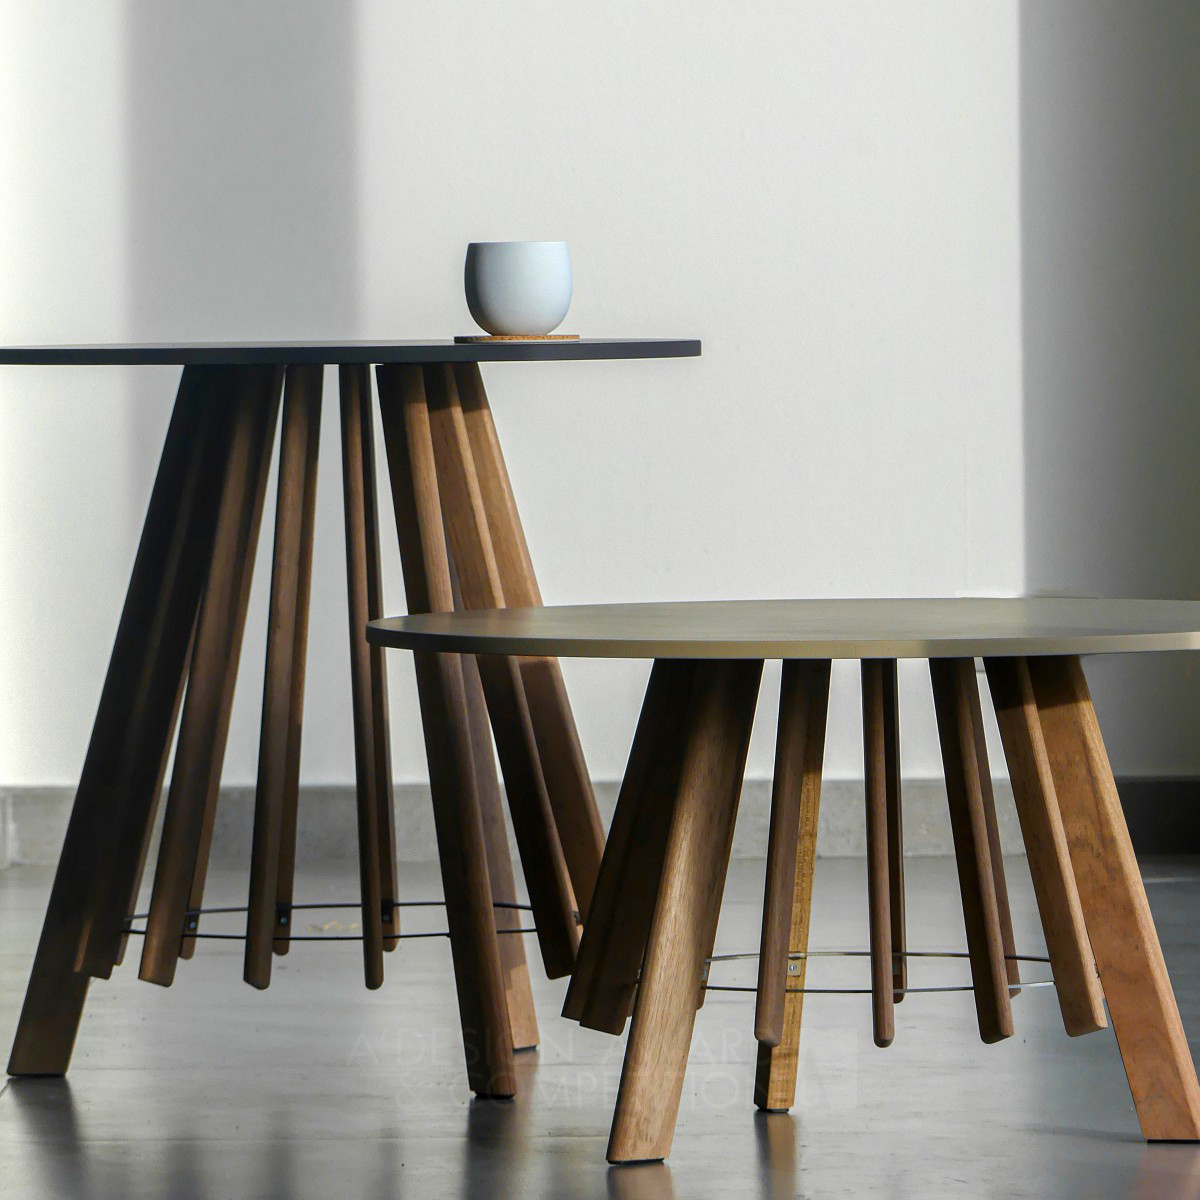 Lavvu Small Tables  by Dorian Asscherick